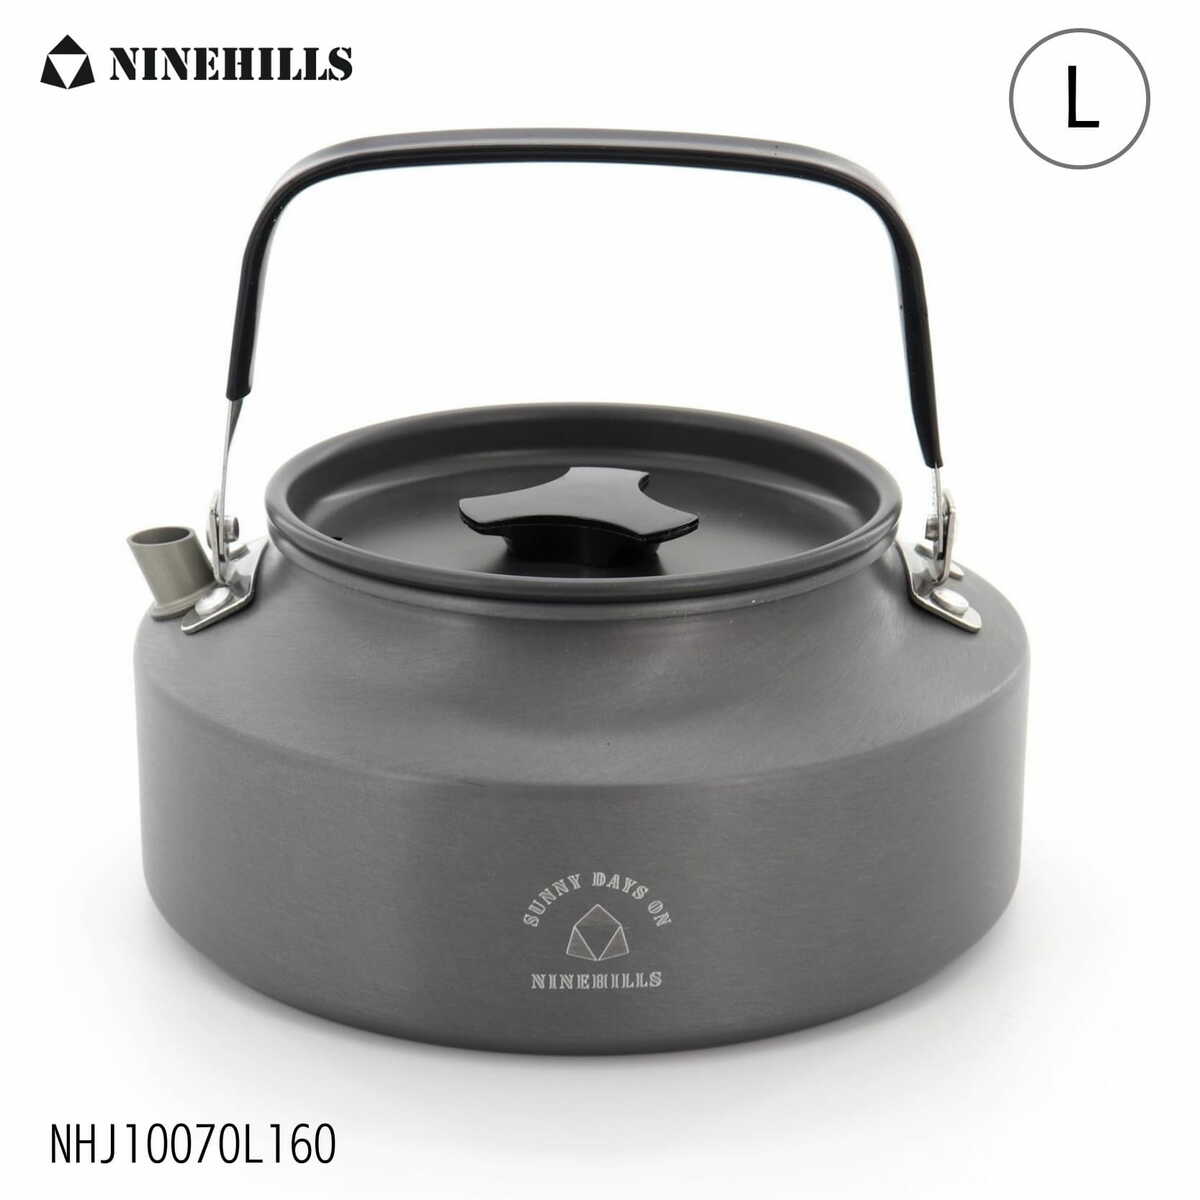 NINEHILLS アウトドアケトル 調理器具 1600ml 超軽量 アルミ やかん 湯沸かし ウォーター ティー キャンプ ハイキング ピクニック用 軽量 持ち運び便利 1.6L